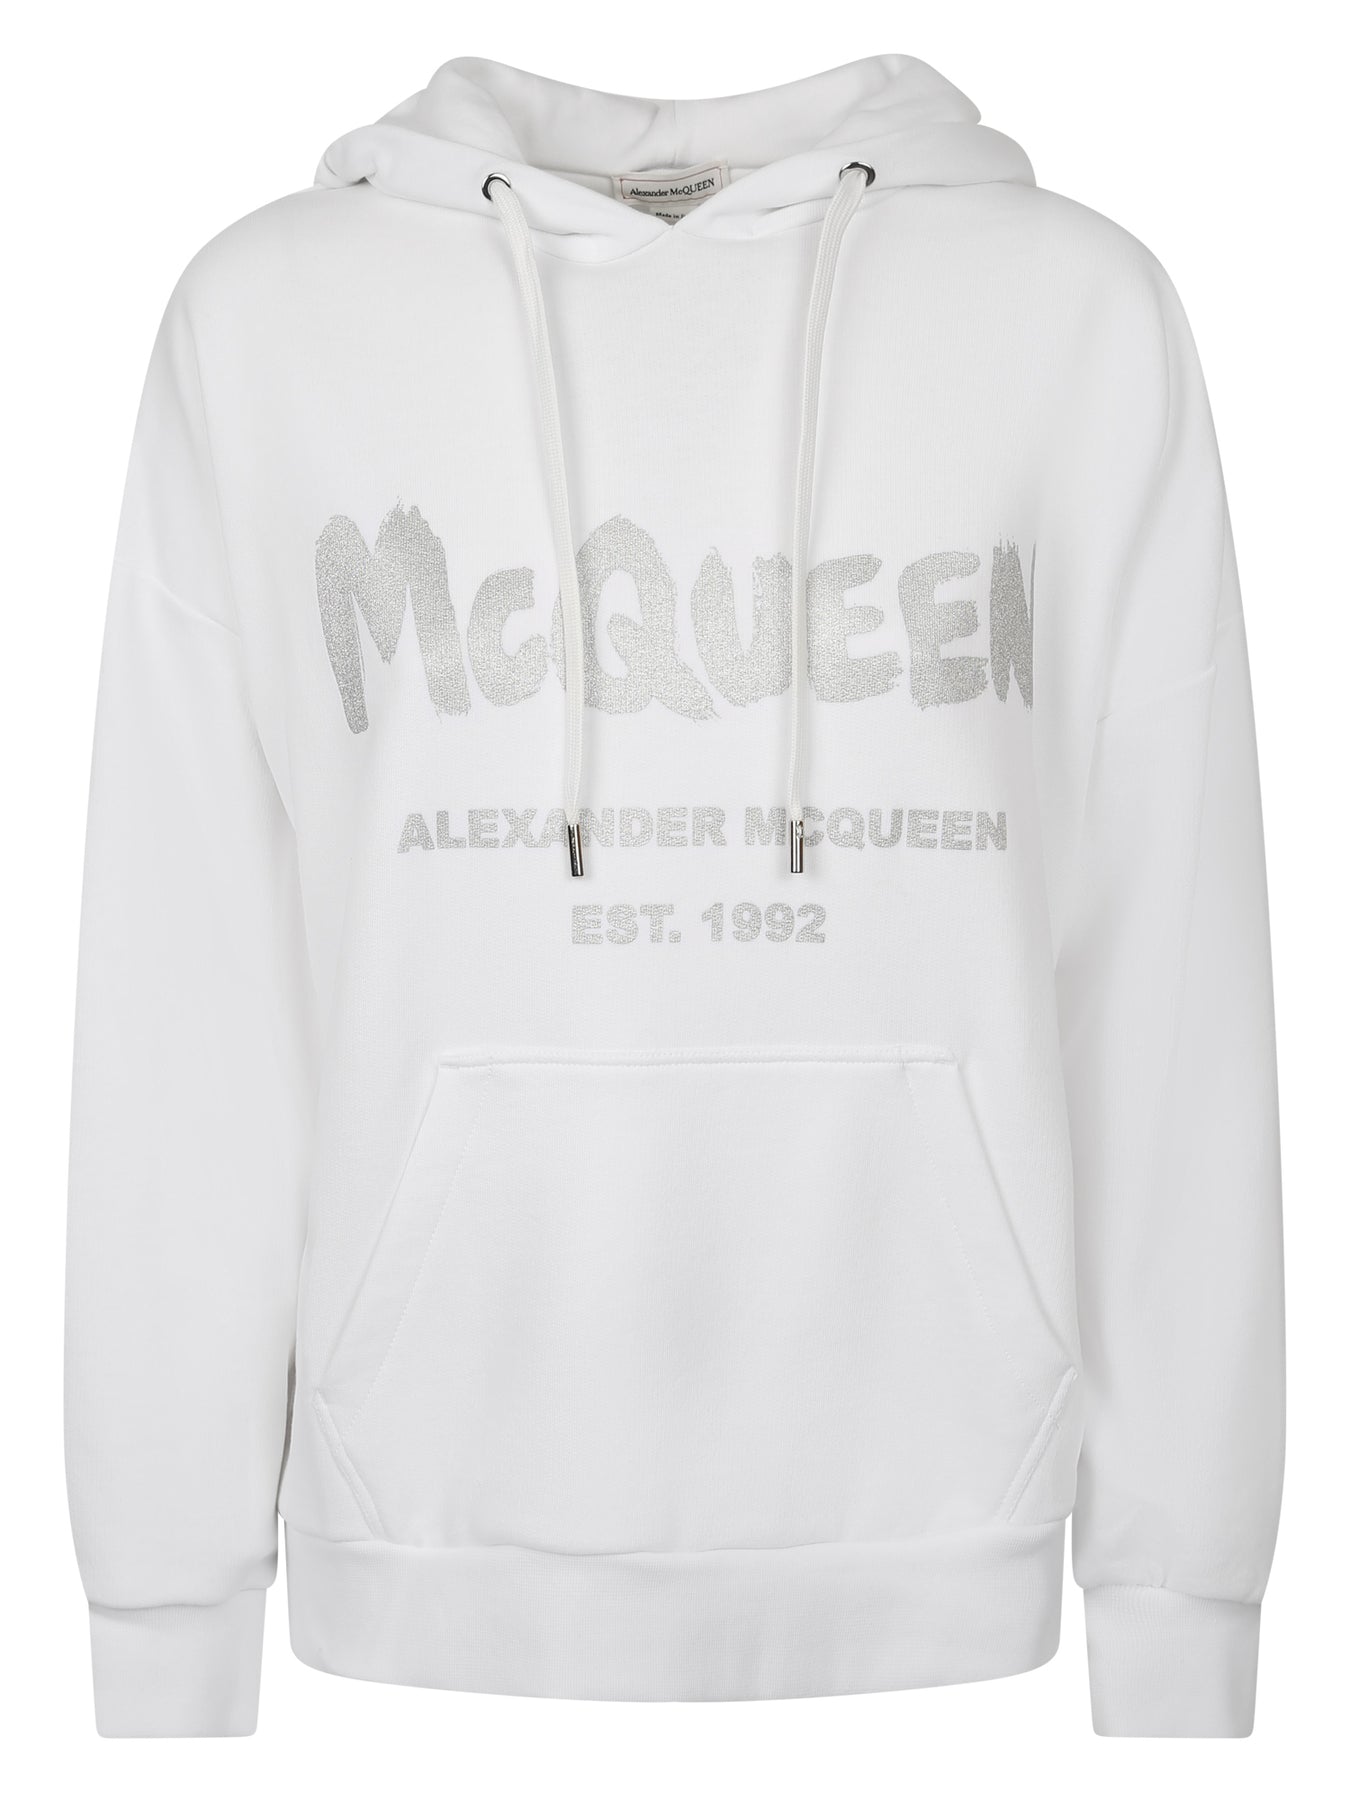 Alexander McQueen | ALEXANDER MCQUEEN 女士白色棉质连帽卫衣 674882-QZAD5-0934商品图片,